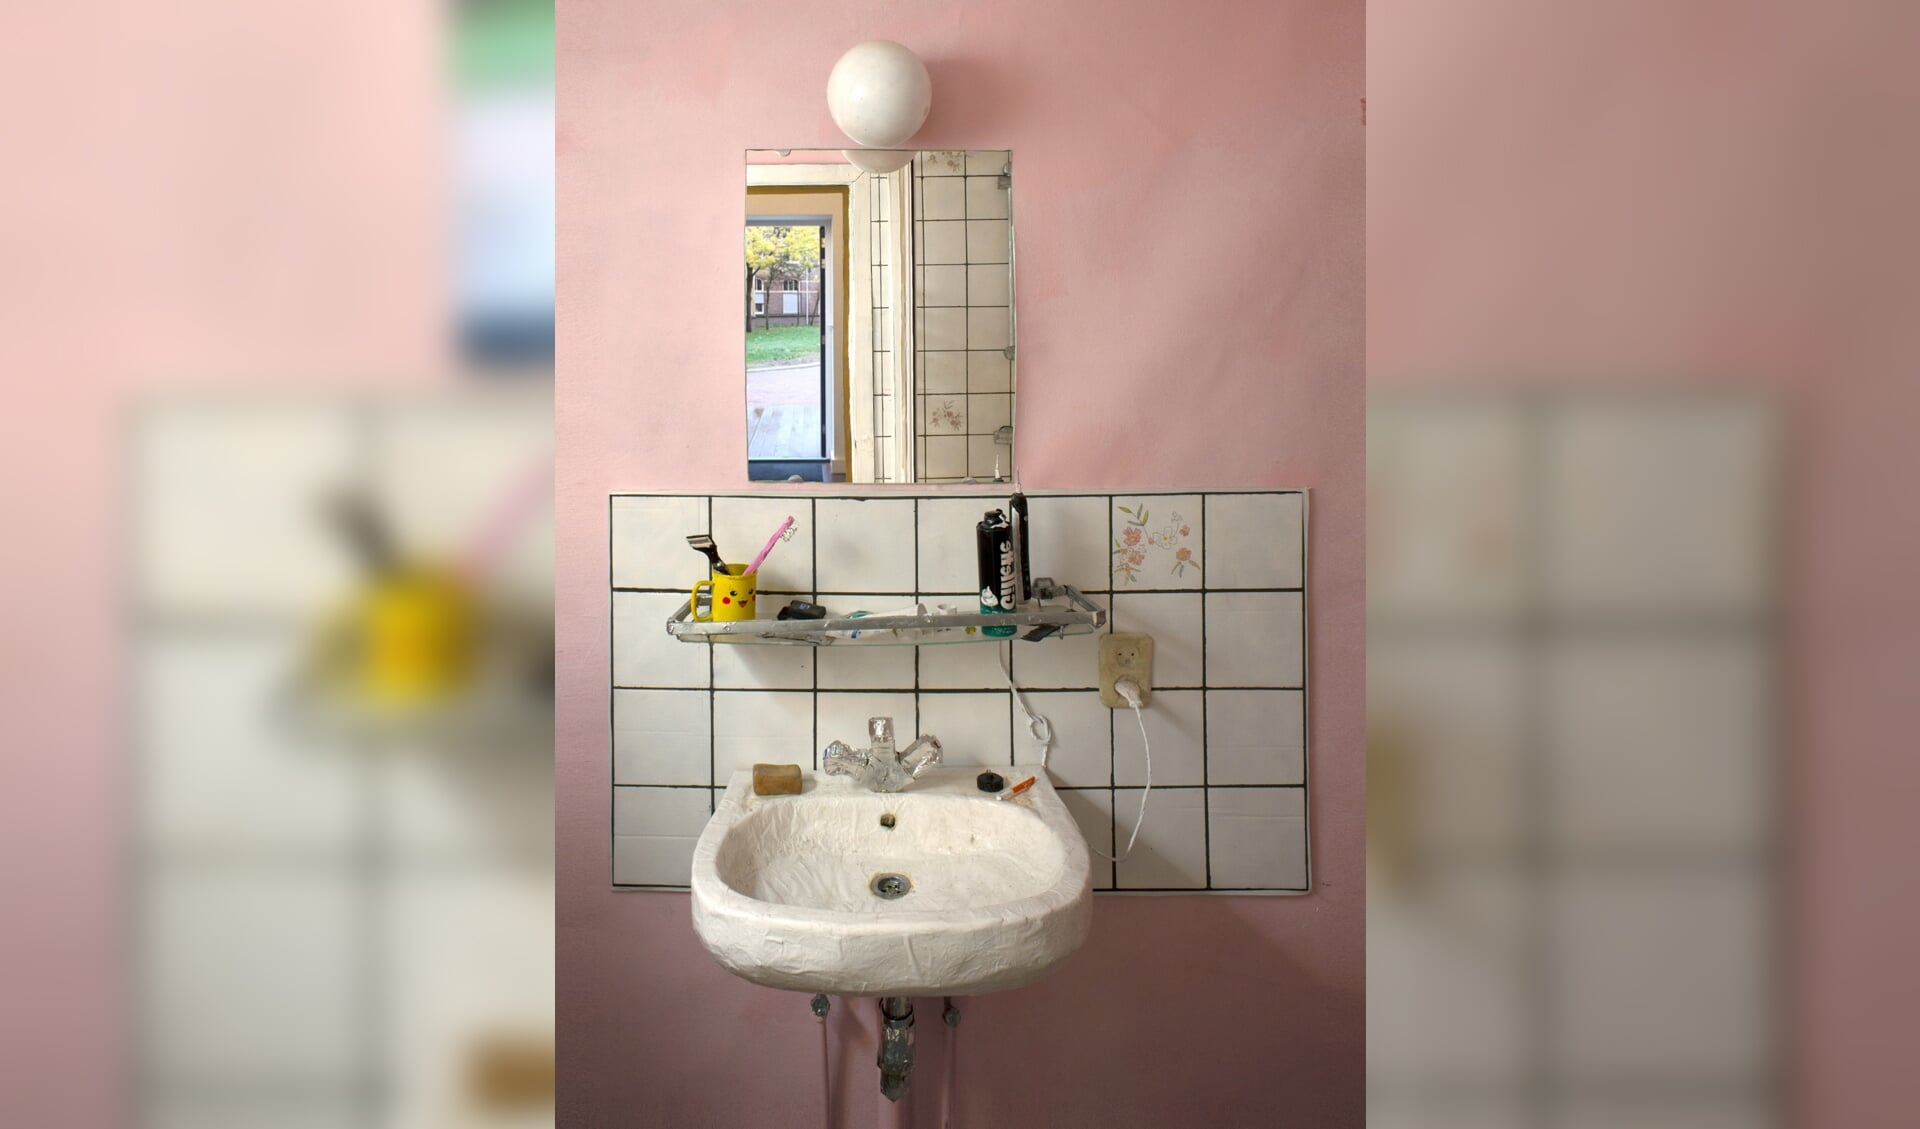 In zijn recente tentoonstelling bij Lichtekooi Artspace in Antwerpen liet Stijn ter Braak een replica van zijn badkamer - en de gespiegelde versie daarvan - zien.